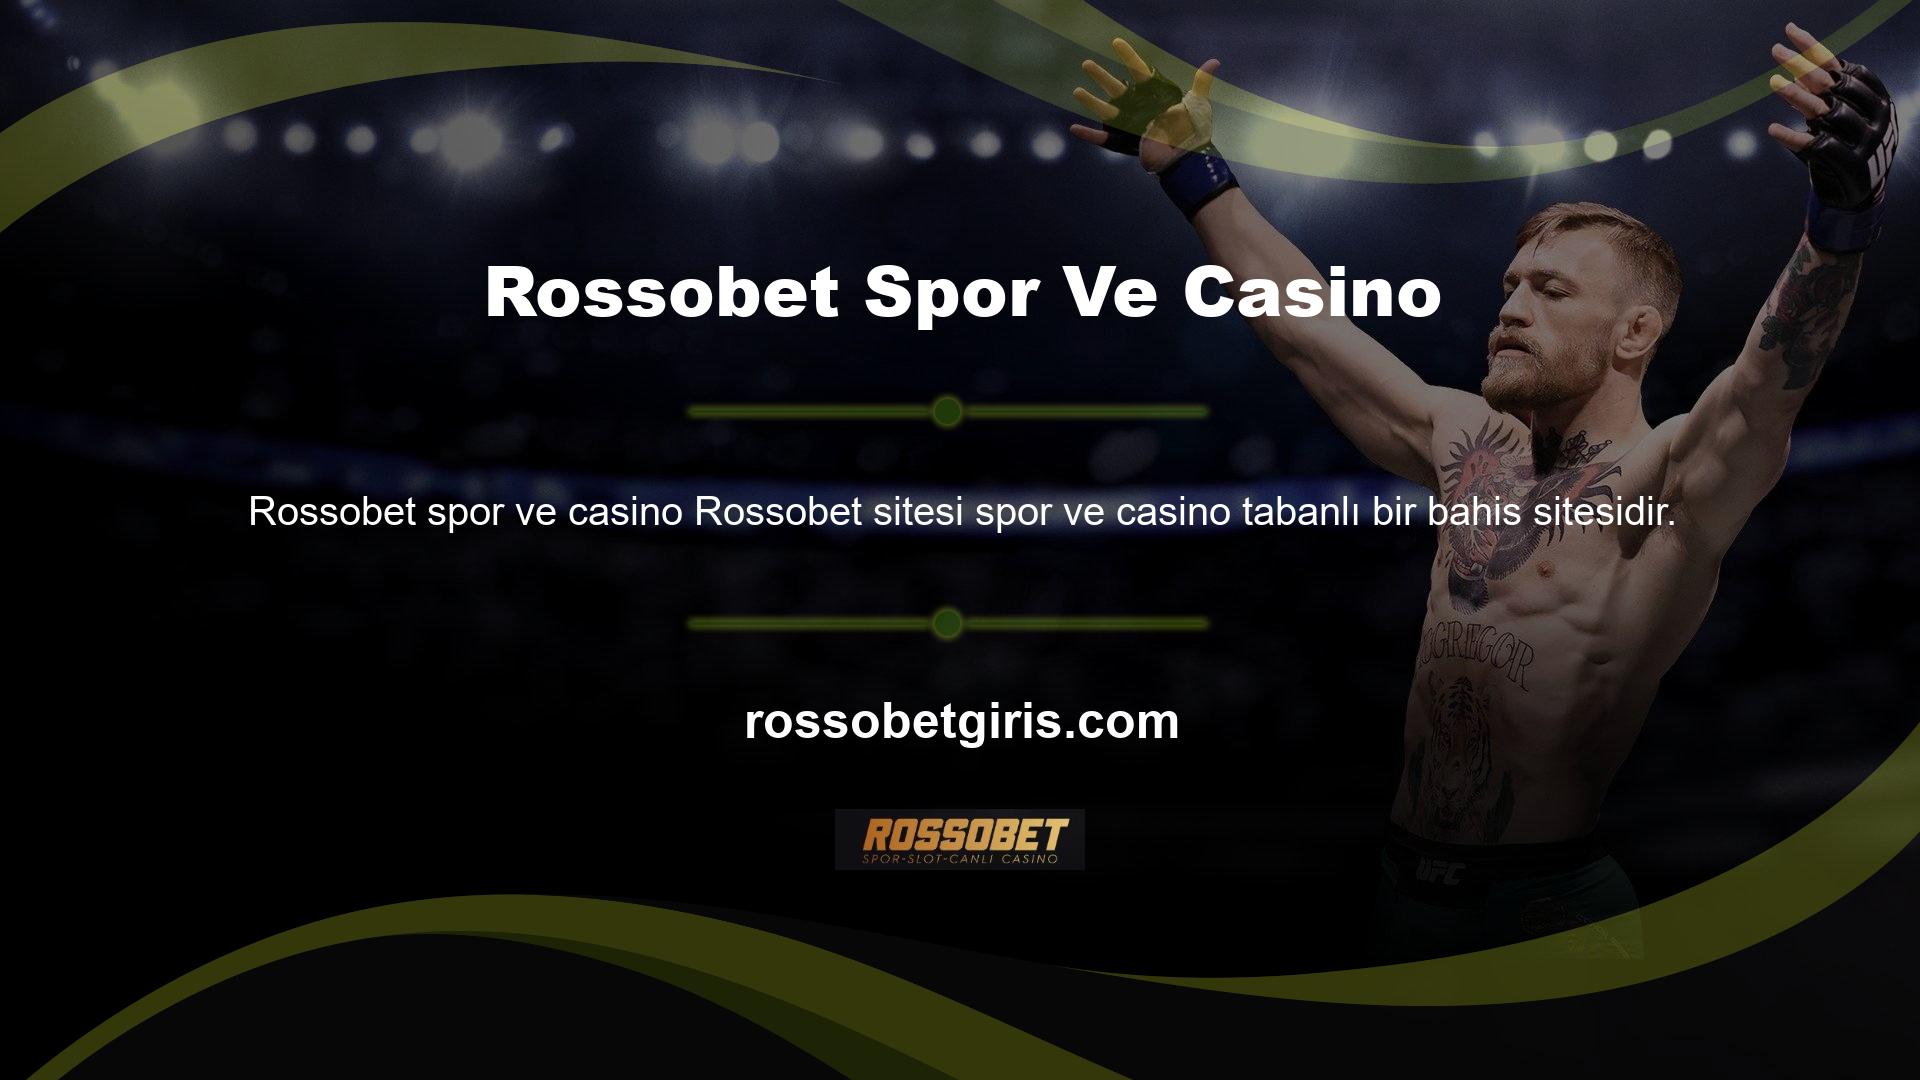 Sitede yer alan slot oyunlarına erişmek için ana sayfadaki 'Casino' sekmesini kullanmalısınız